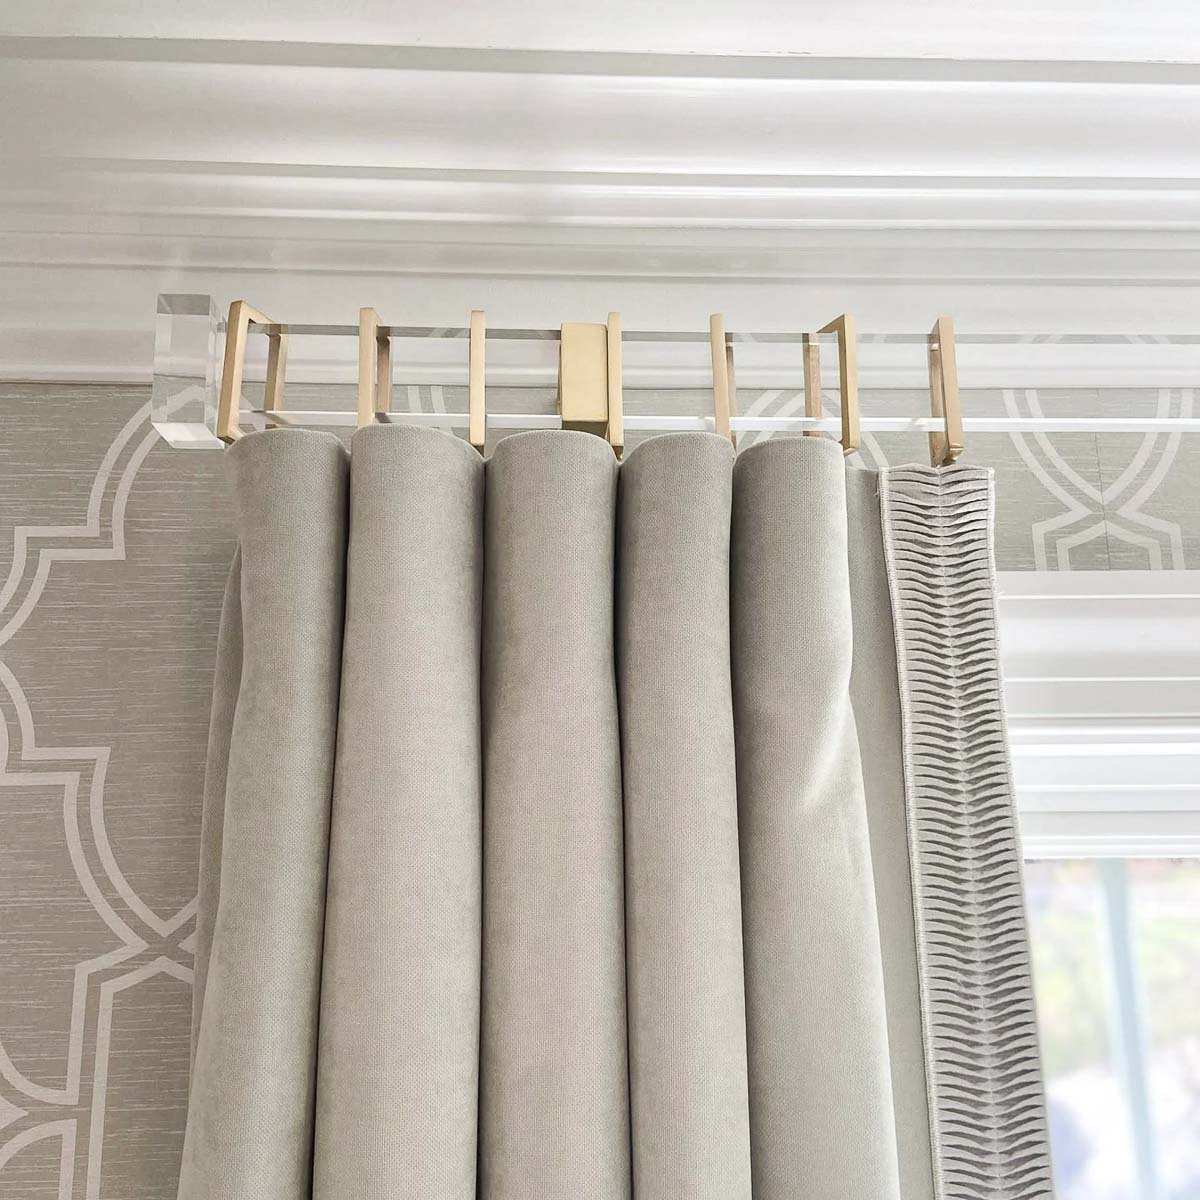 Rectangular acrylic curtain rod